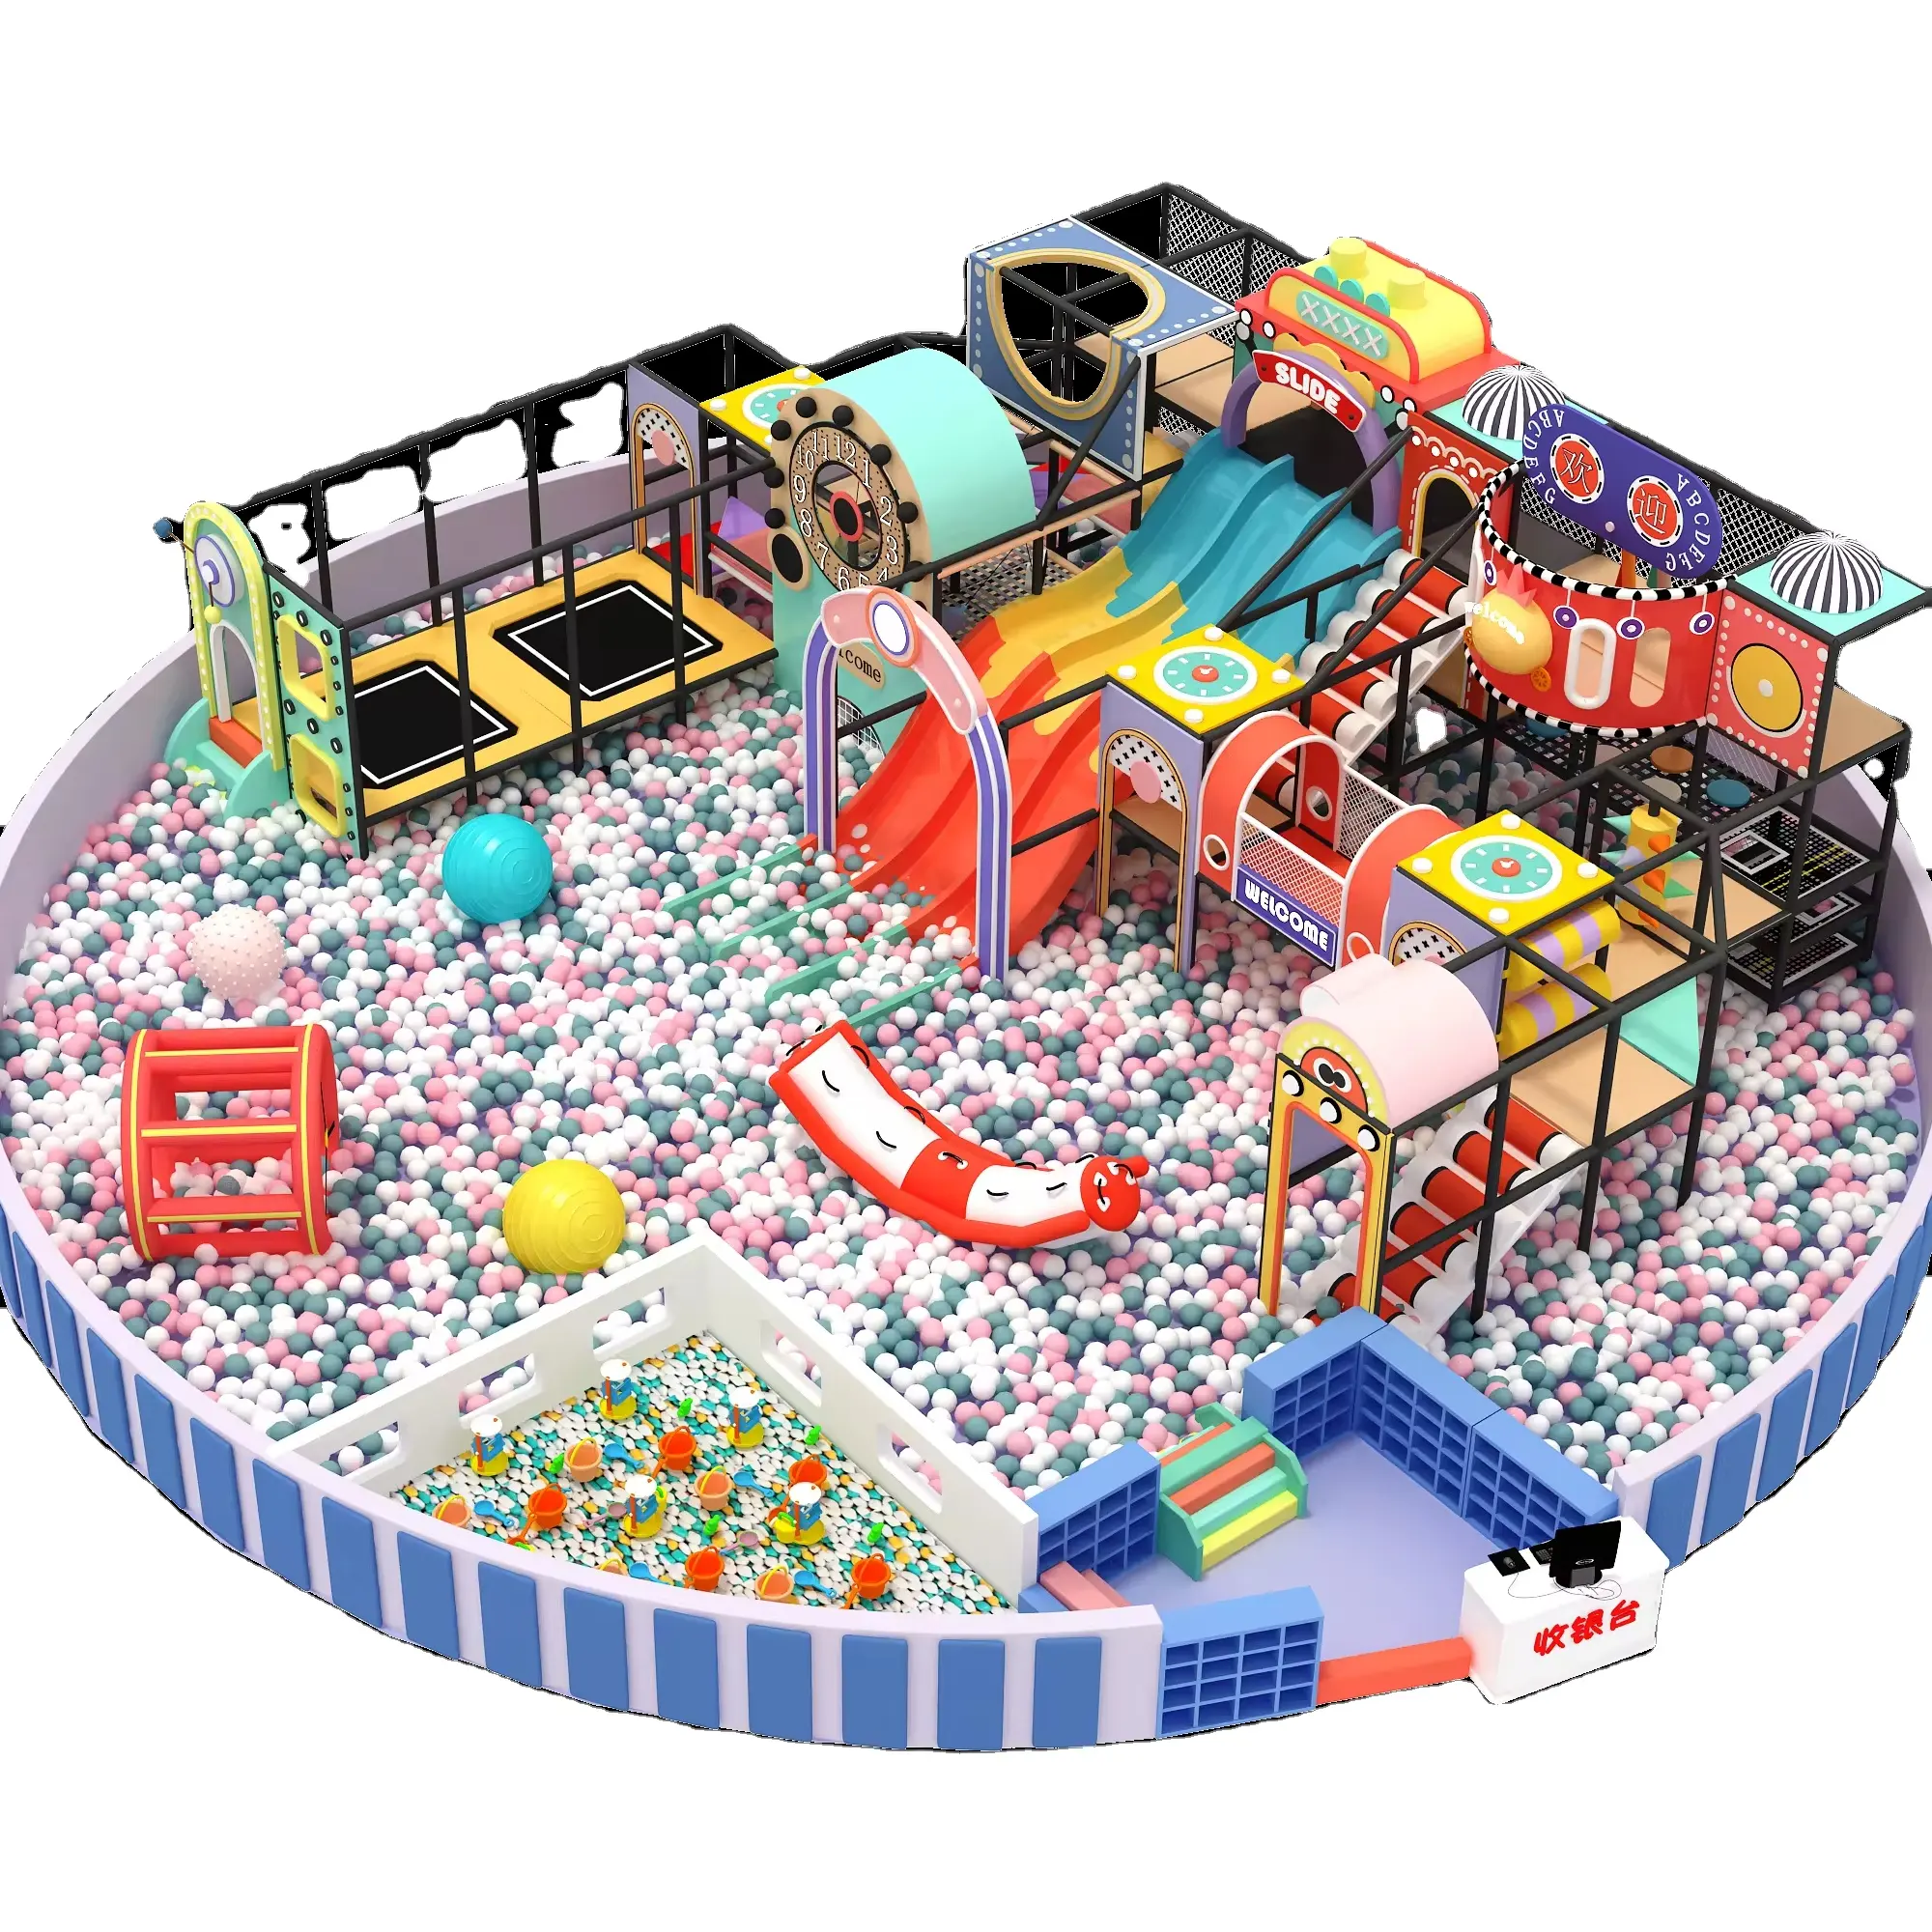 Aire de jeux pour enfants équipement de pose Softp intérieur parc d'attractions toboggans pour fosse à balles fabricant d'équipement